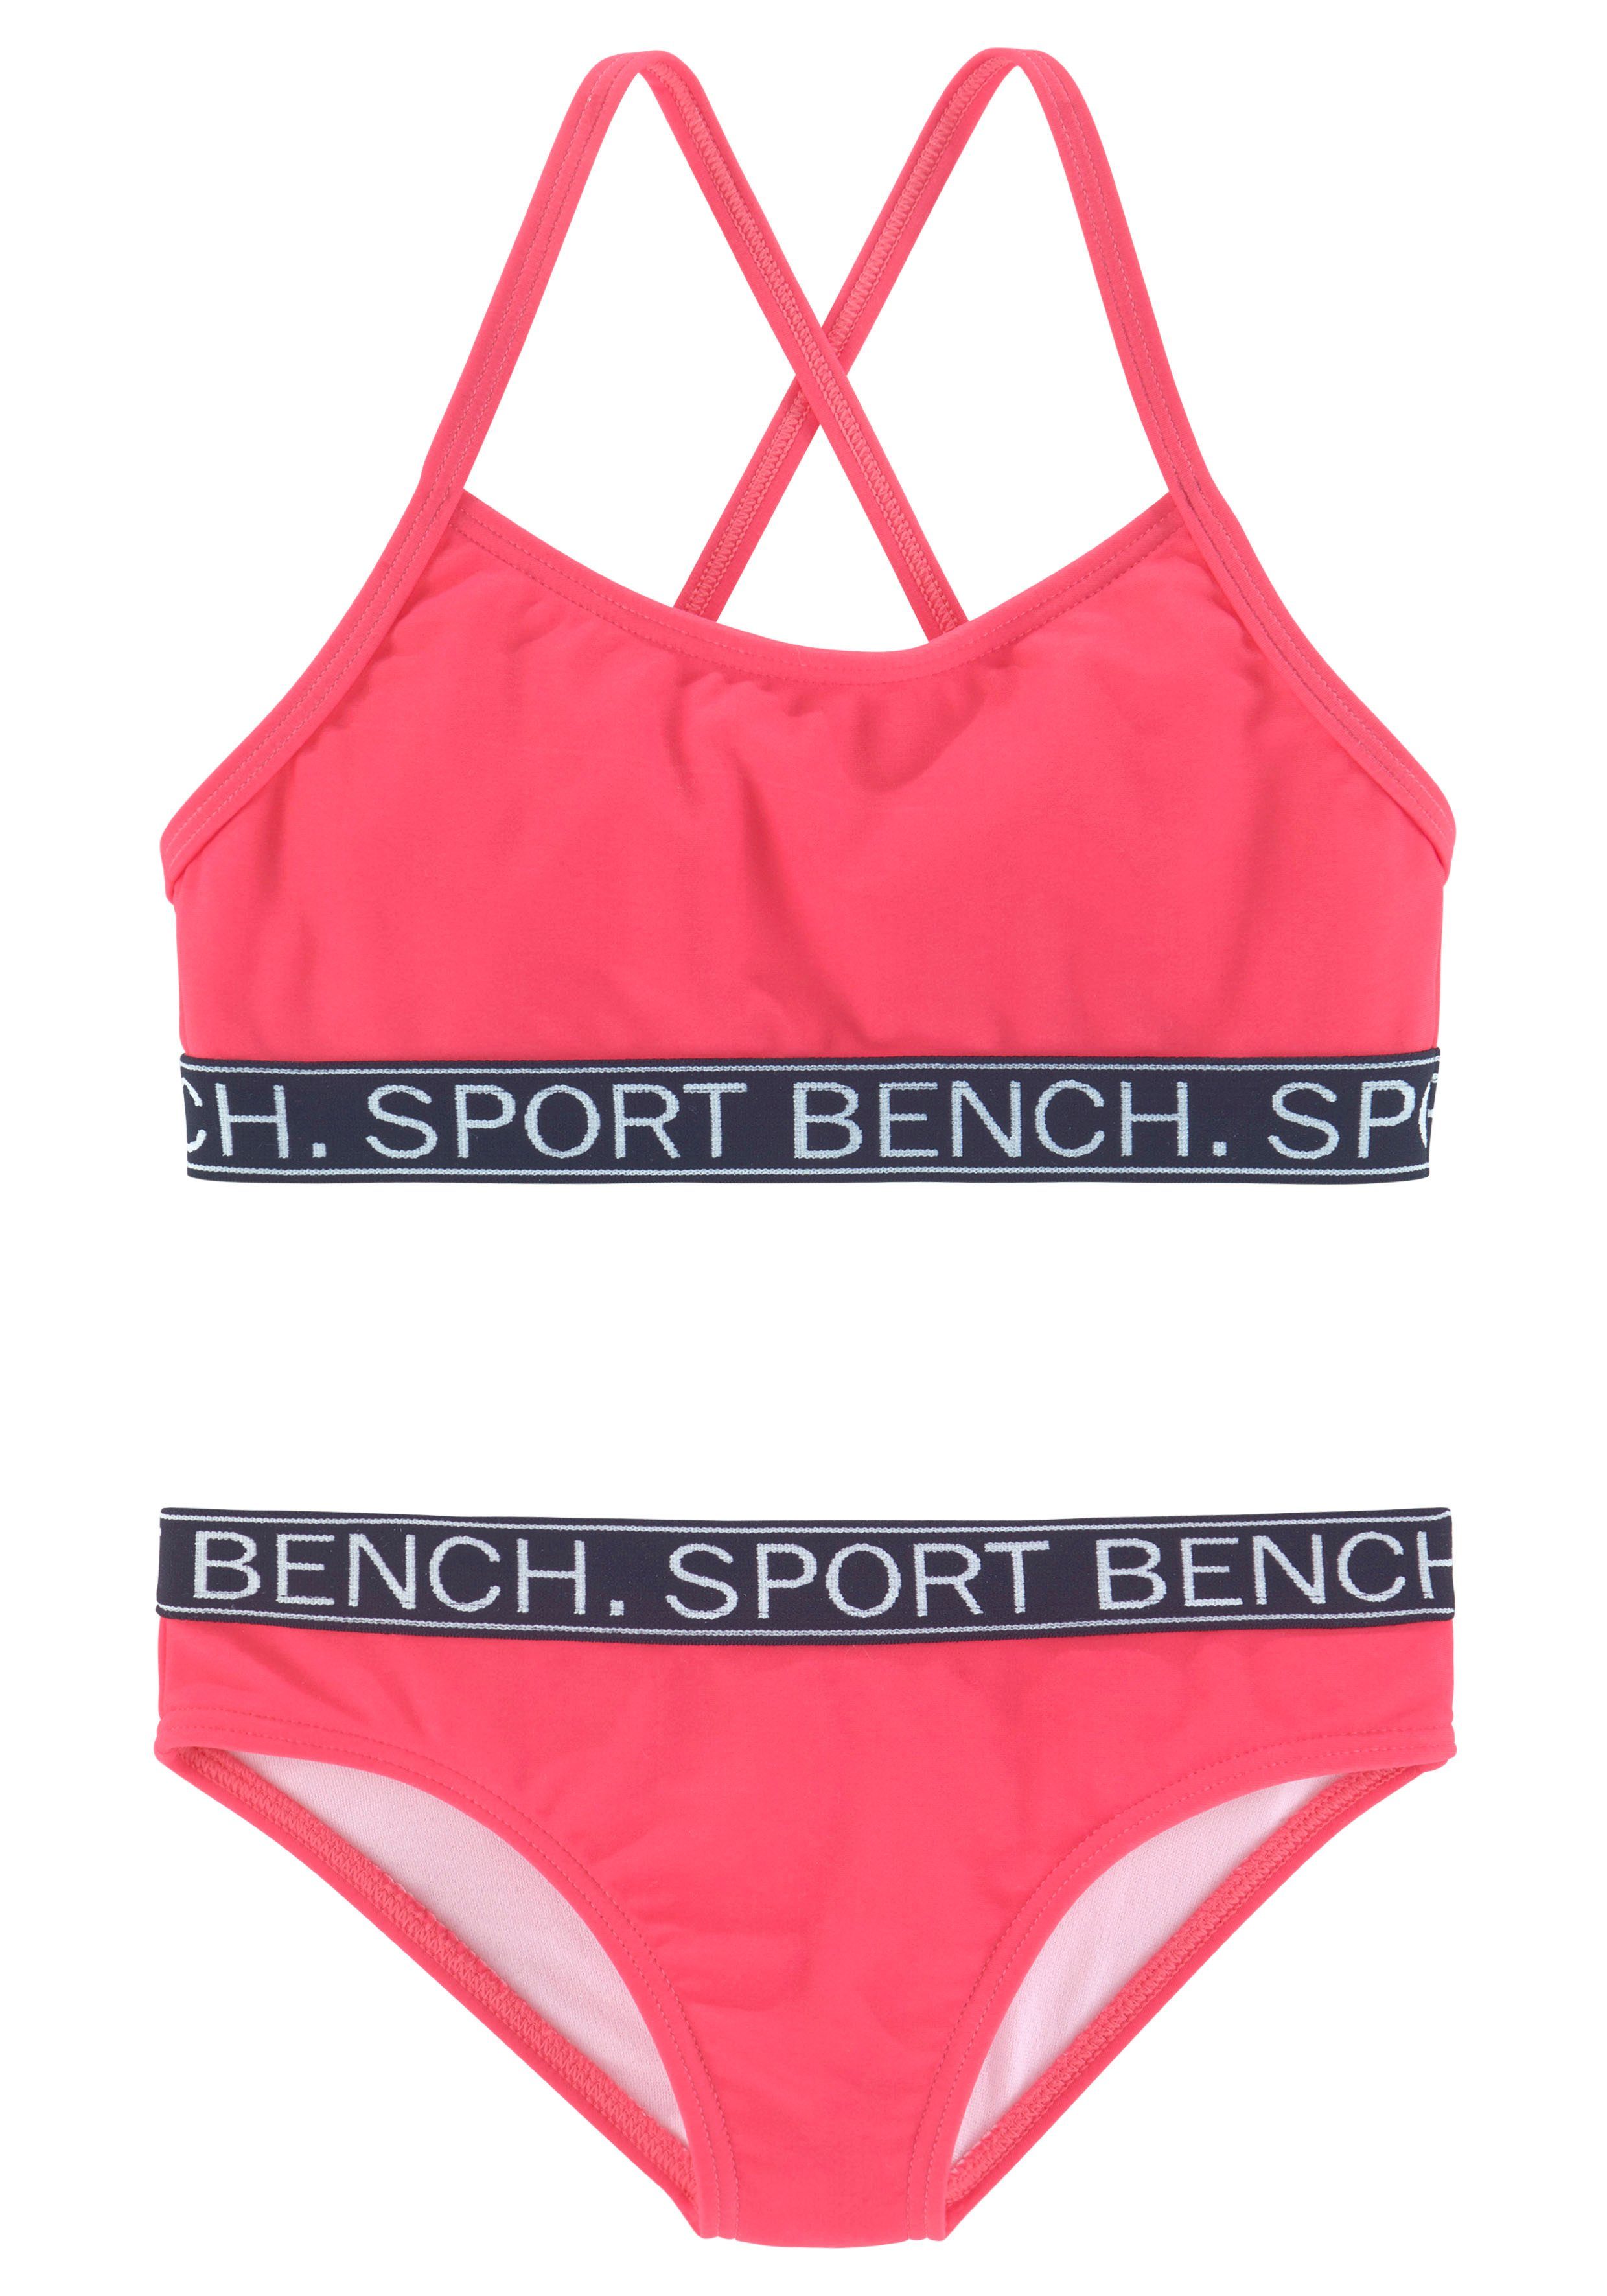 Bench. Bustier-Bikini Yva Kids in sportlichem Design und Farben pink